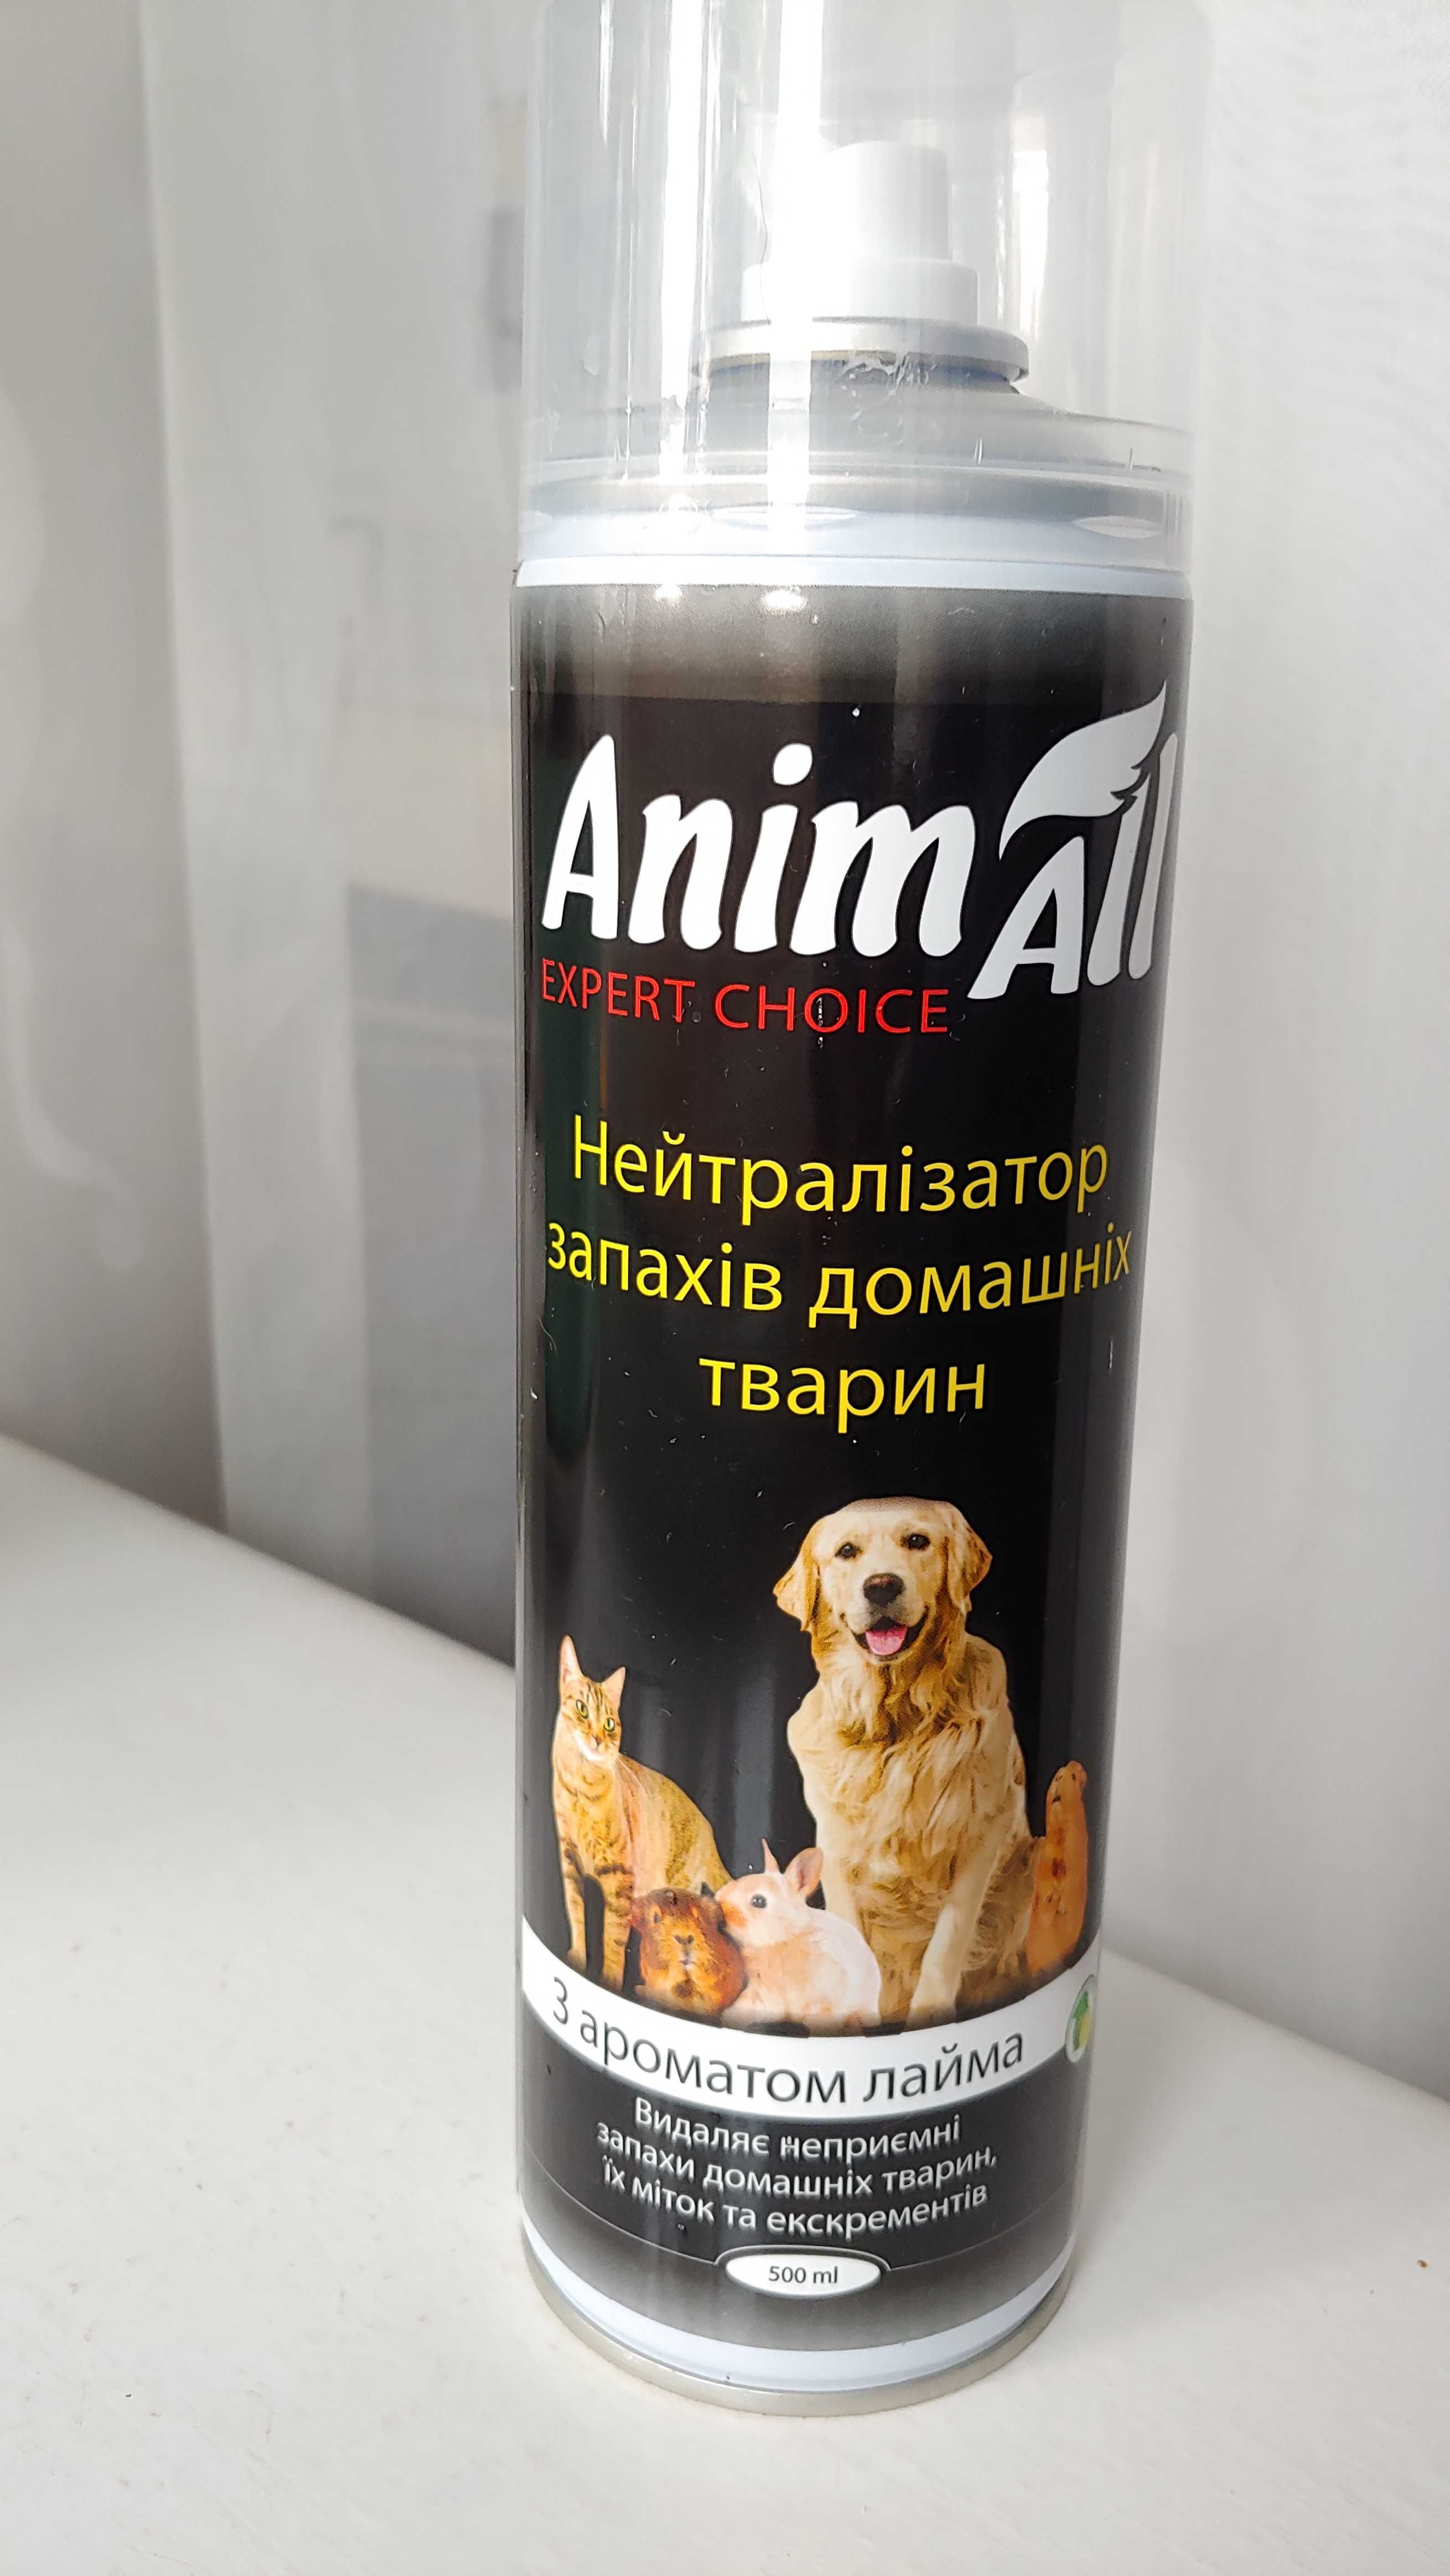 Нейтрализатор запаха домашних животных, новый, Anim All